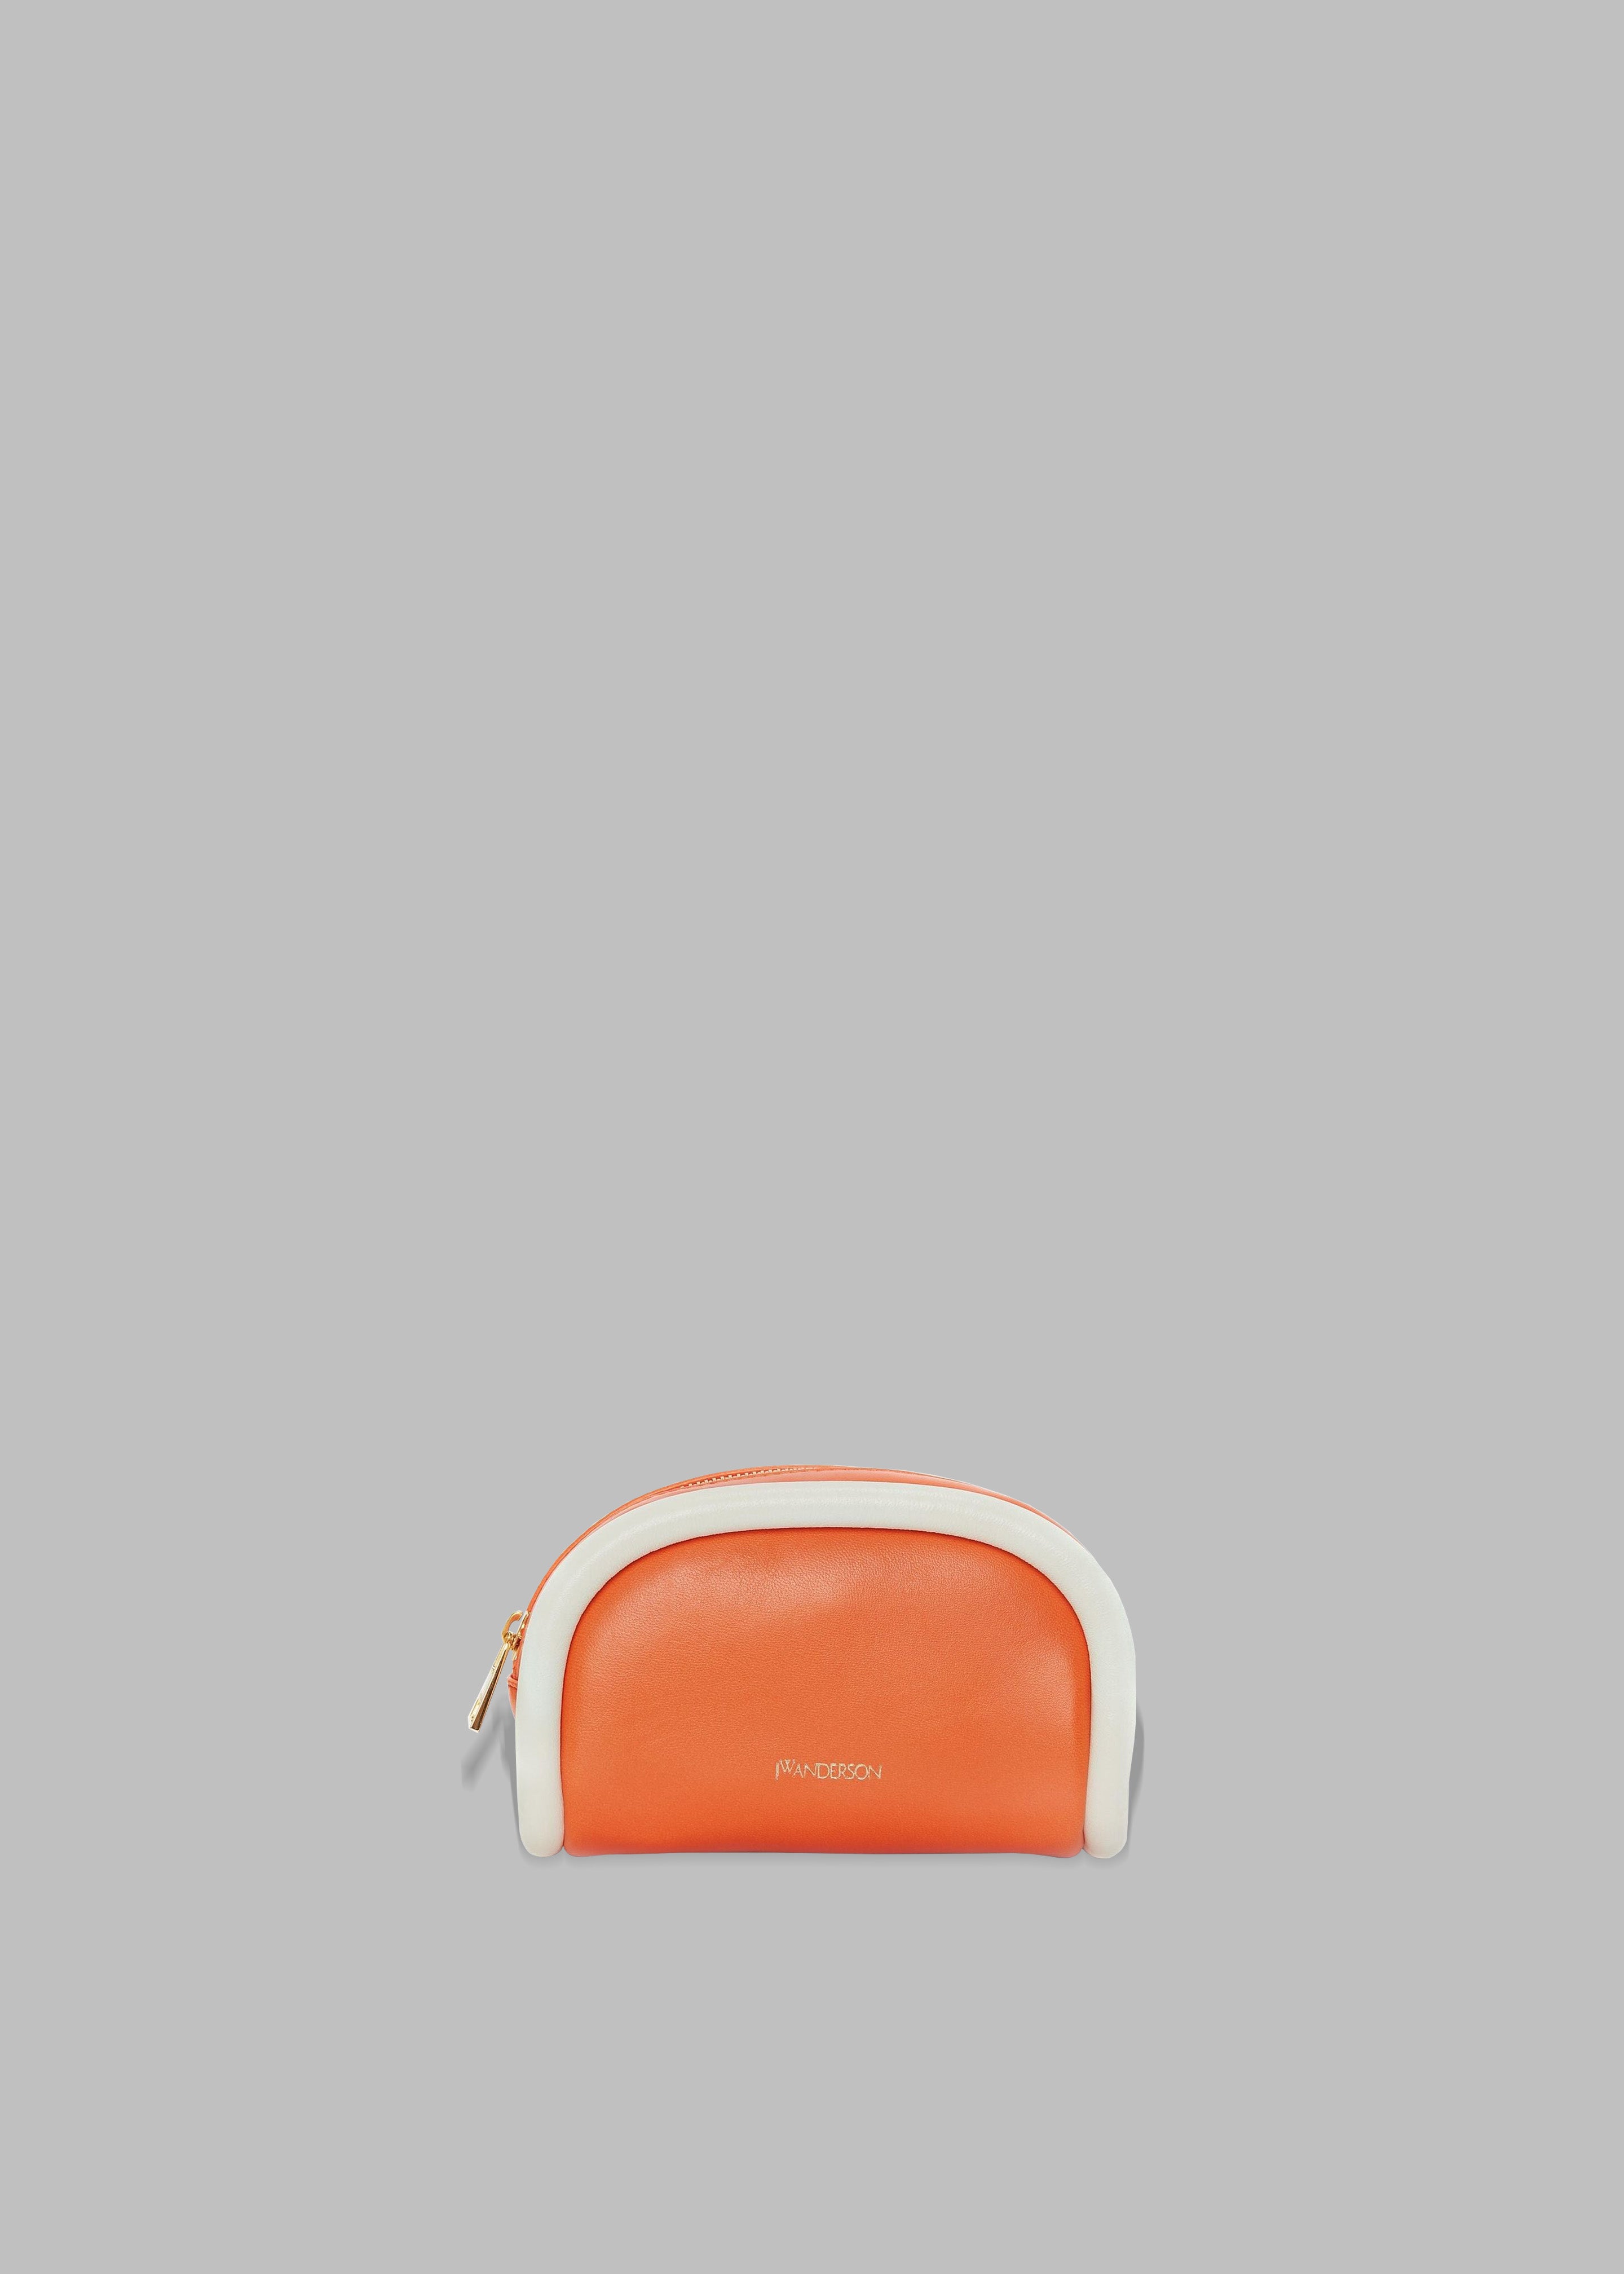 JW Anderson Small Leather Bumper-Pouch - Orange/White - 1